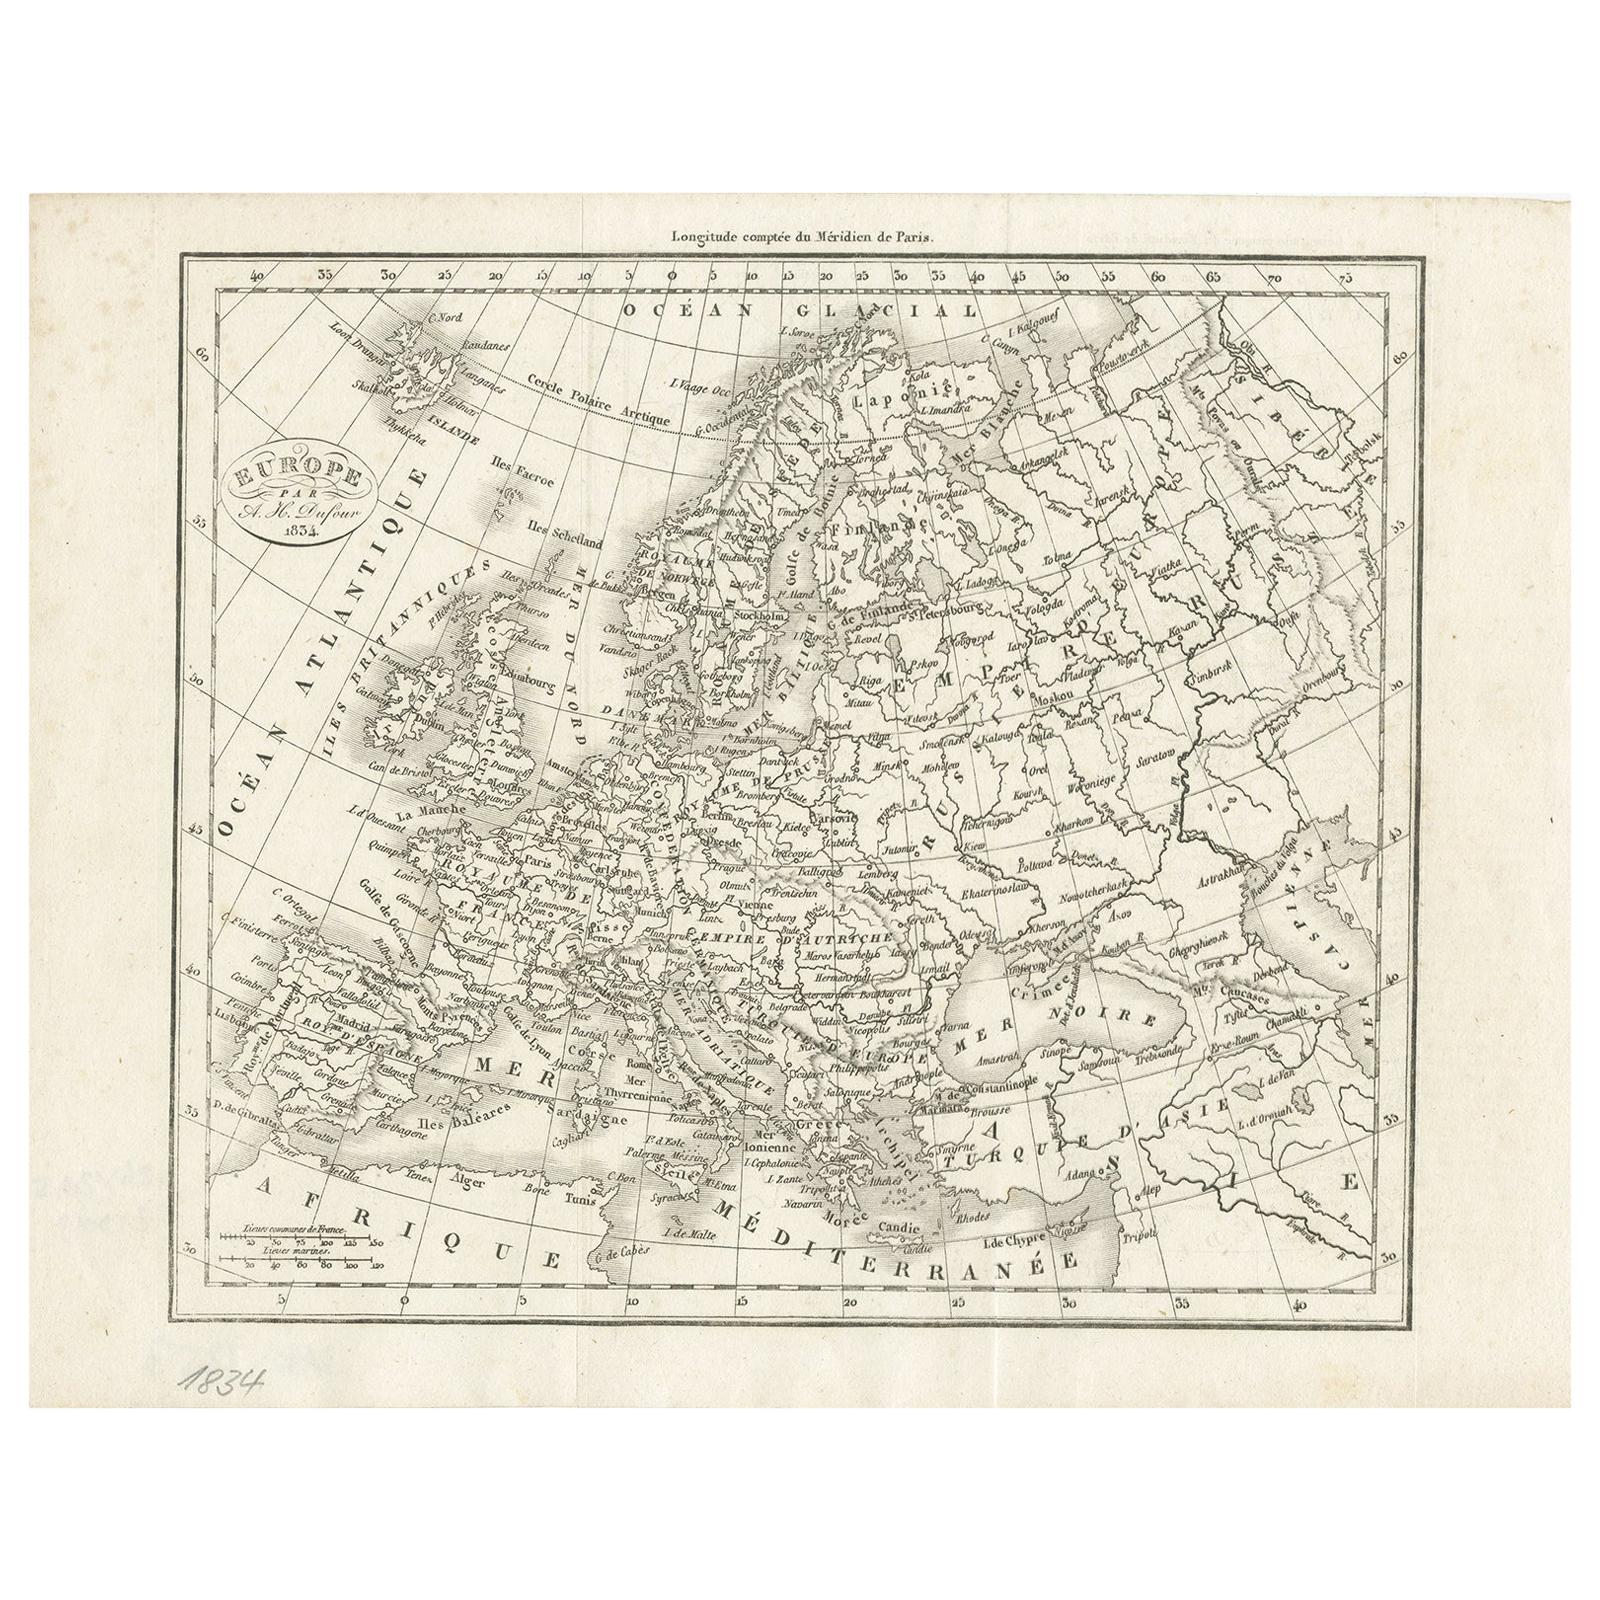 Belle carte décorative en noir et blanc ancienne d'Europe, datant d'environ 1834